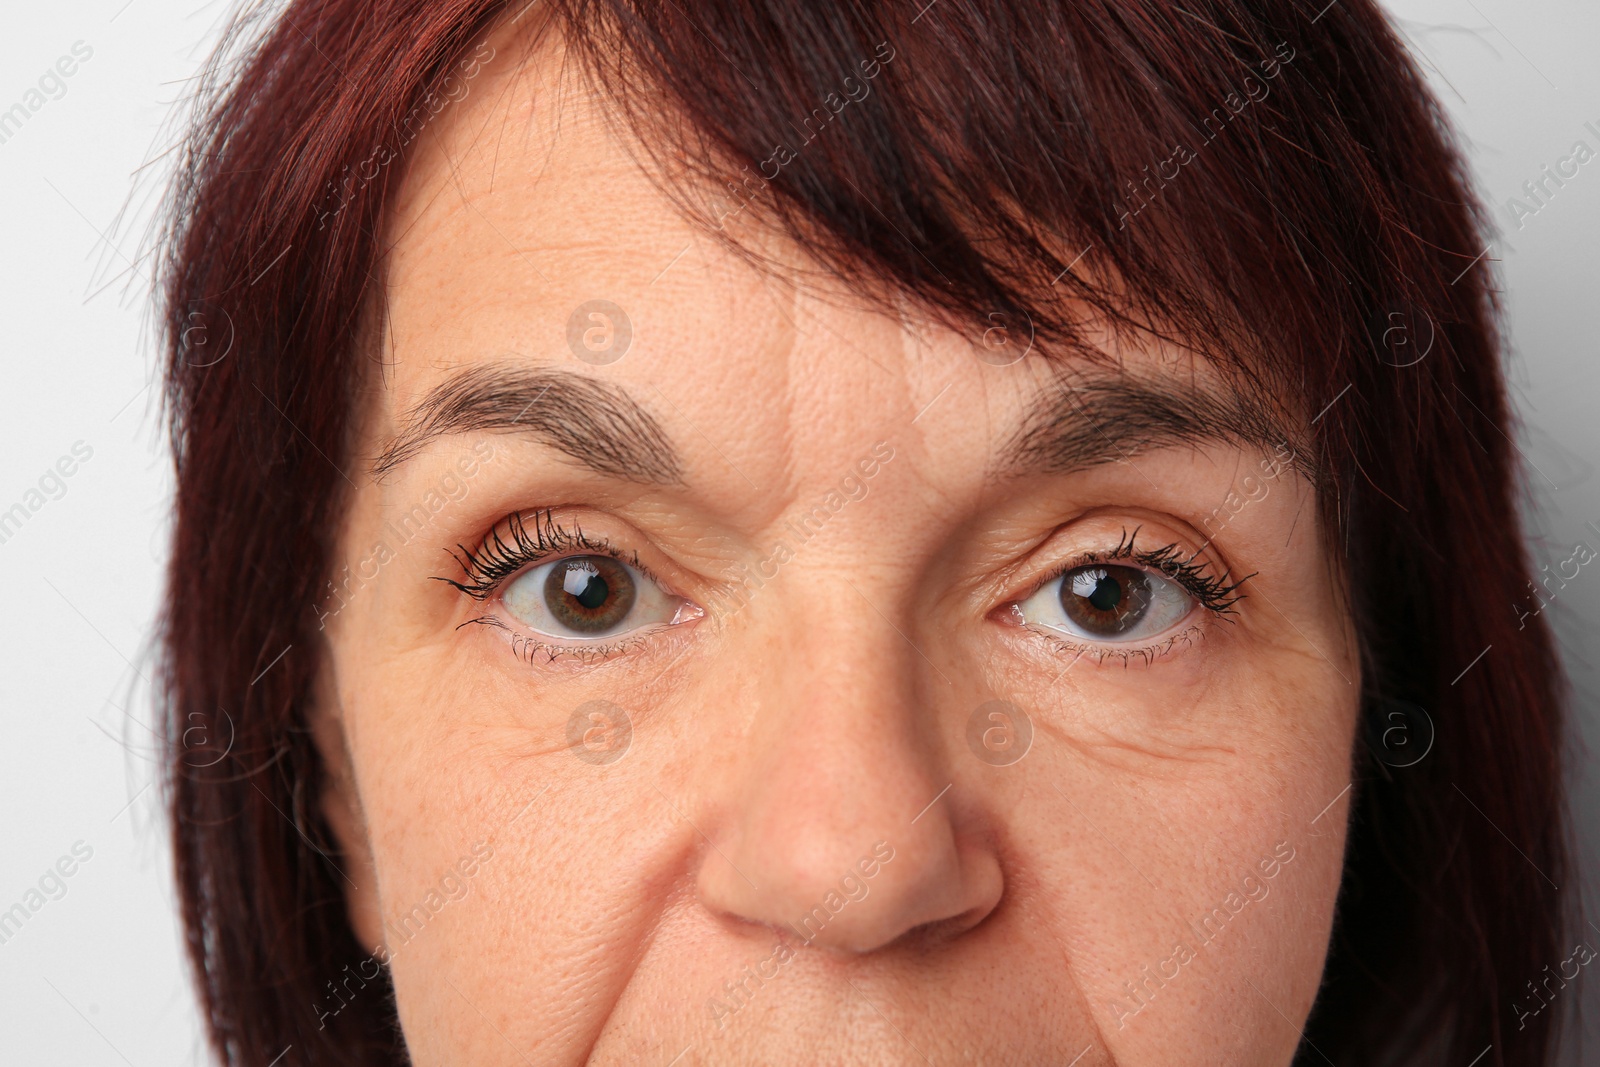 Photo of Skin care. Senior woman on white background, closeup